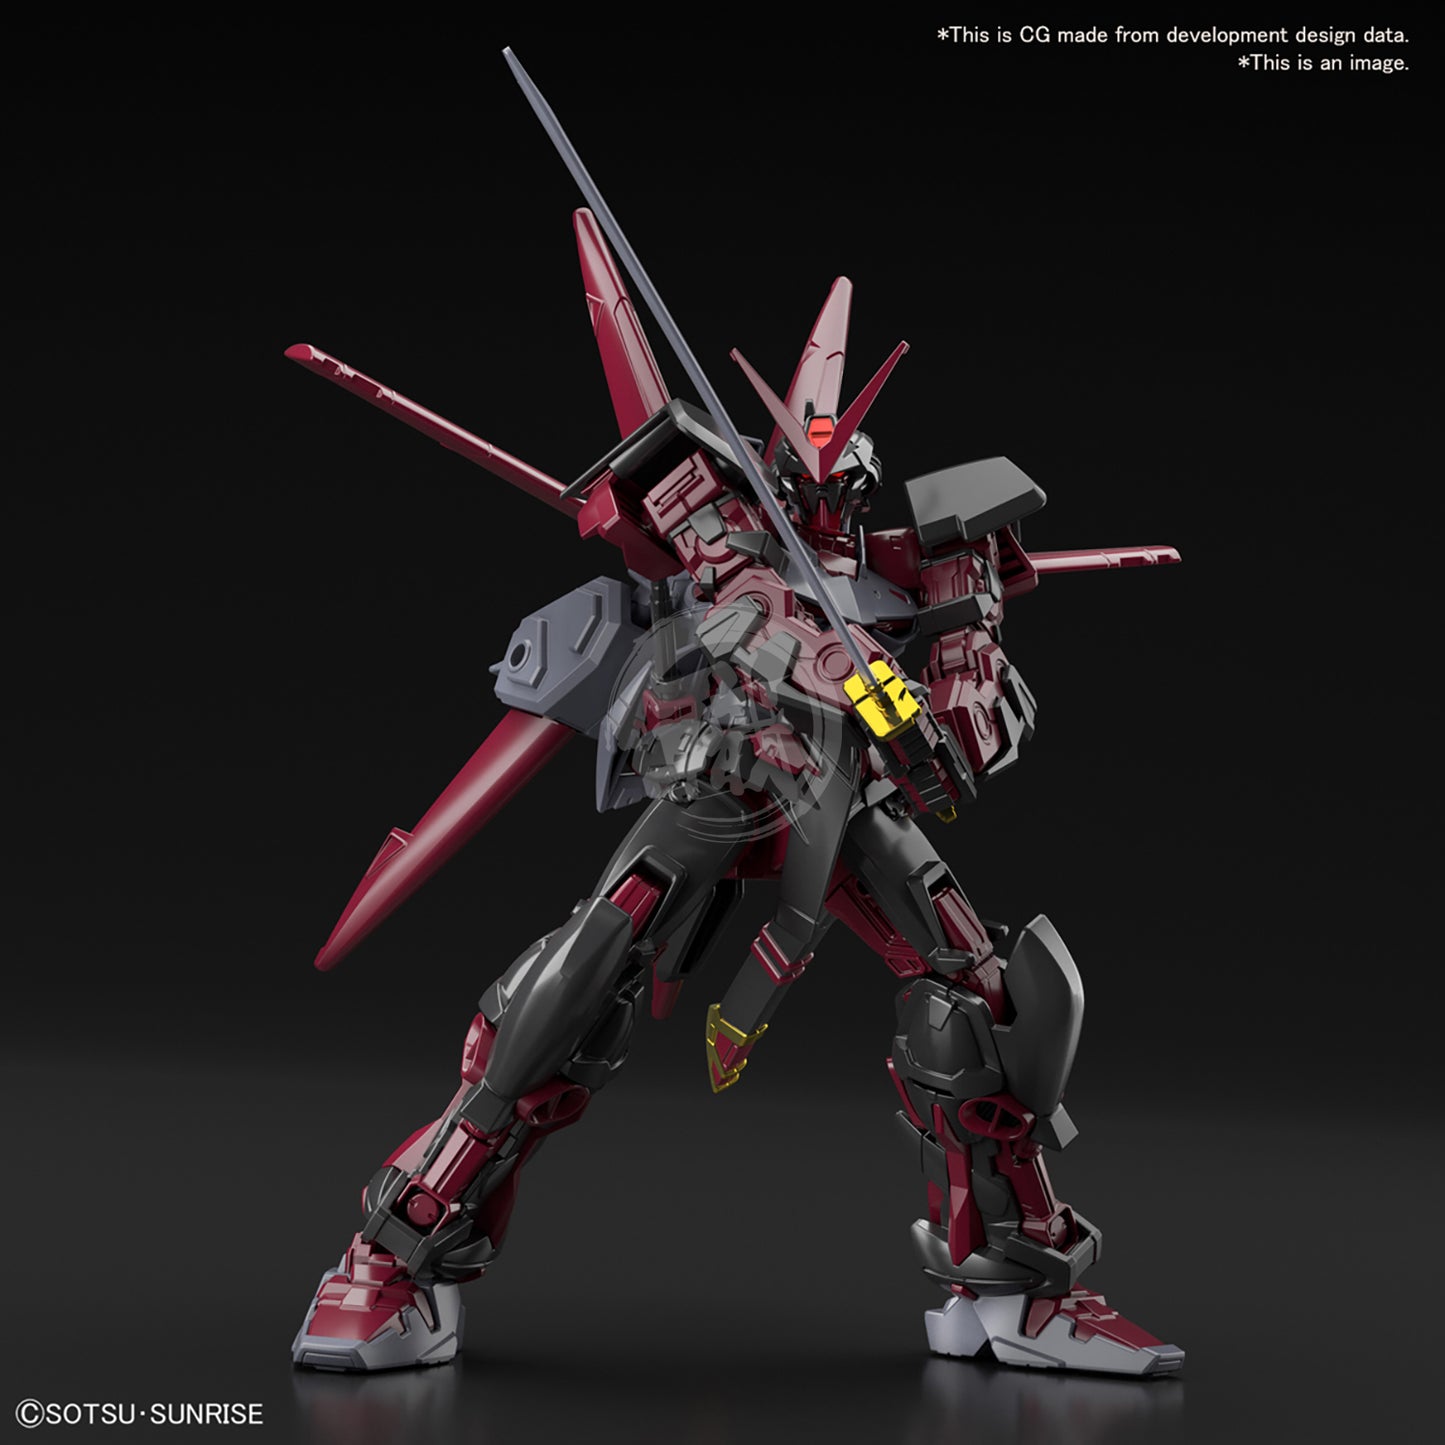 HG Gundam Astray Red Frame Inversion - ShokuninGunpla